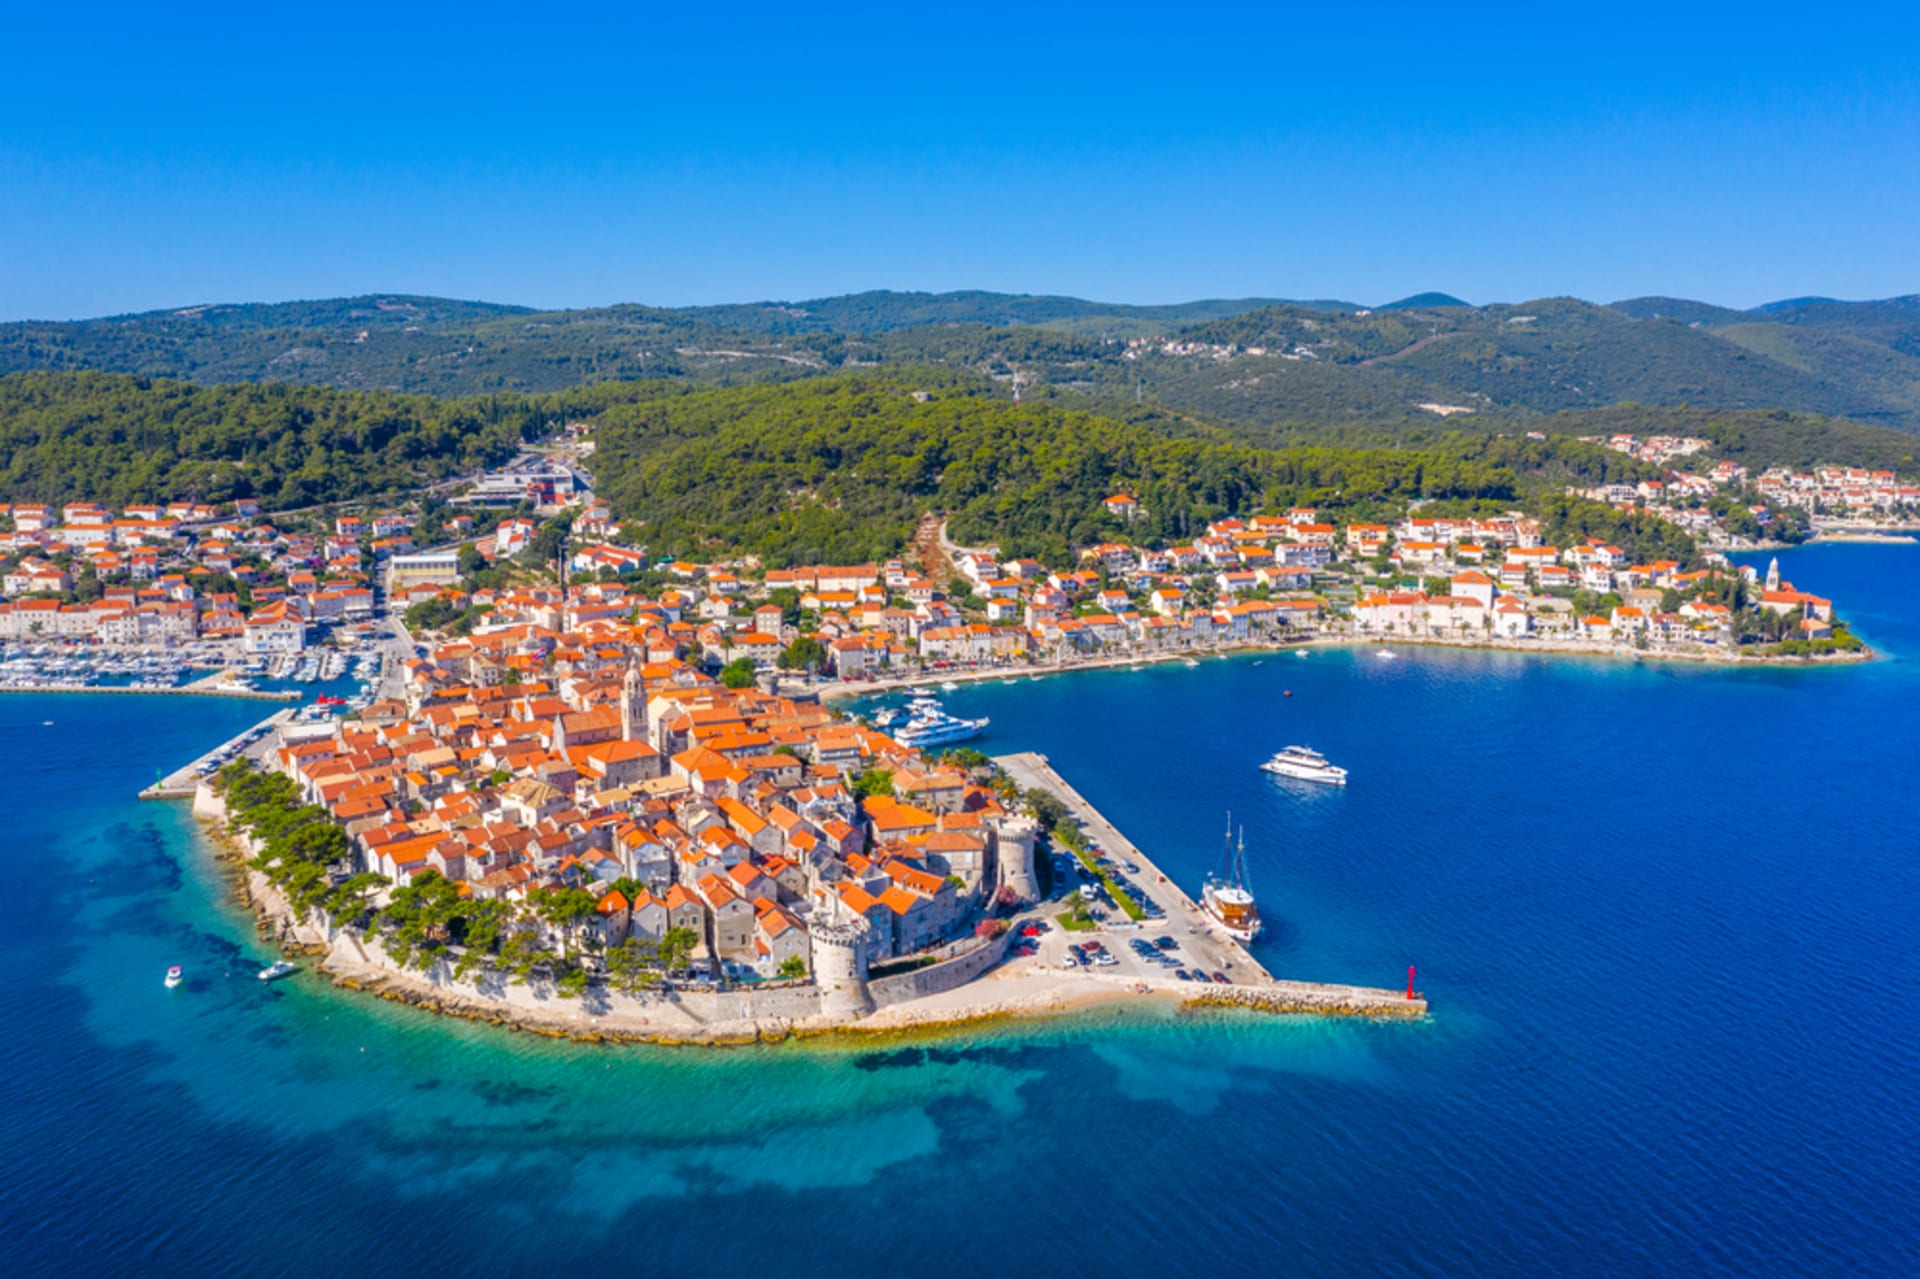 Pohled na město Korčula, které leží na stejnojmenném ostrově.